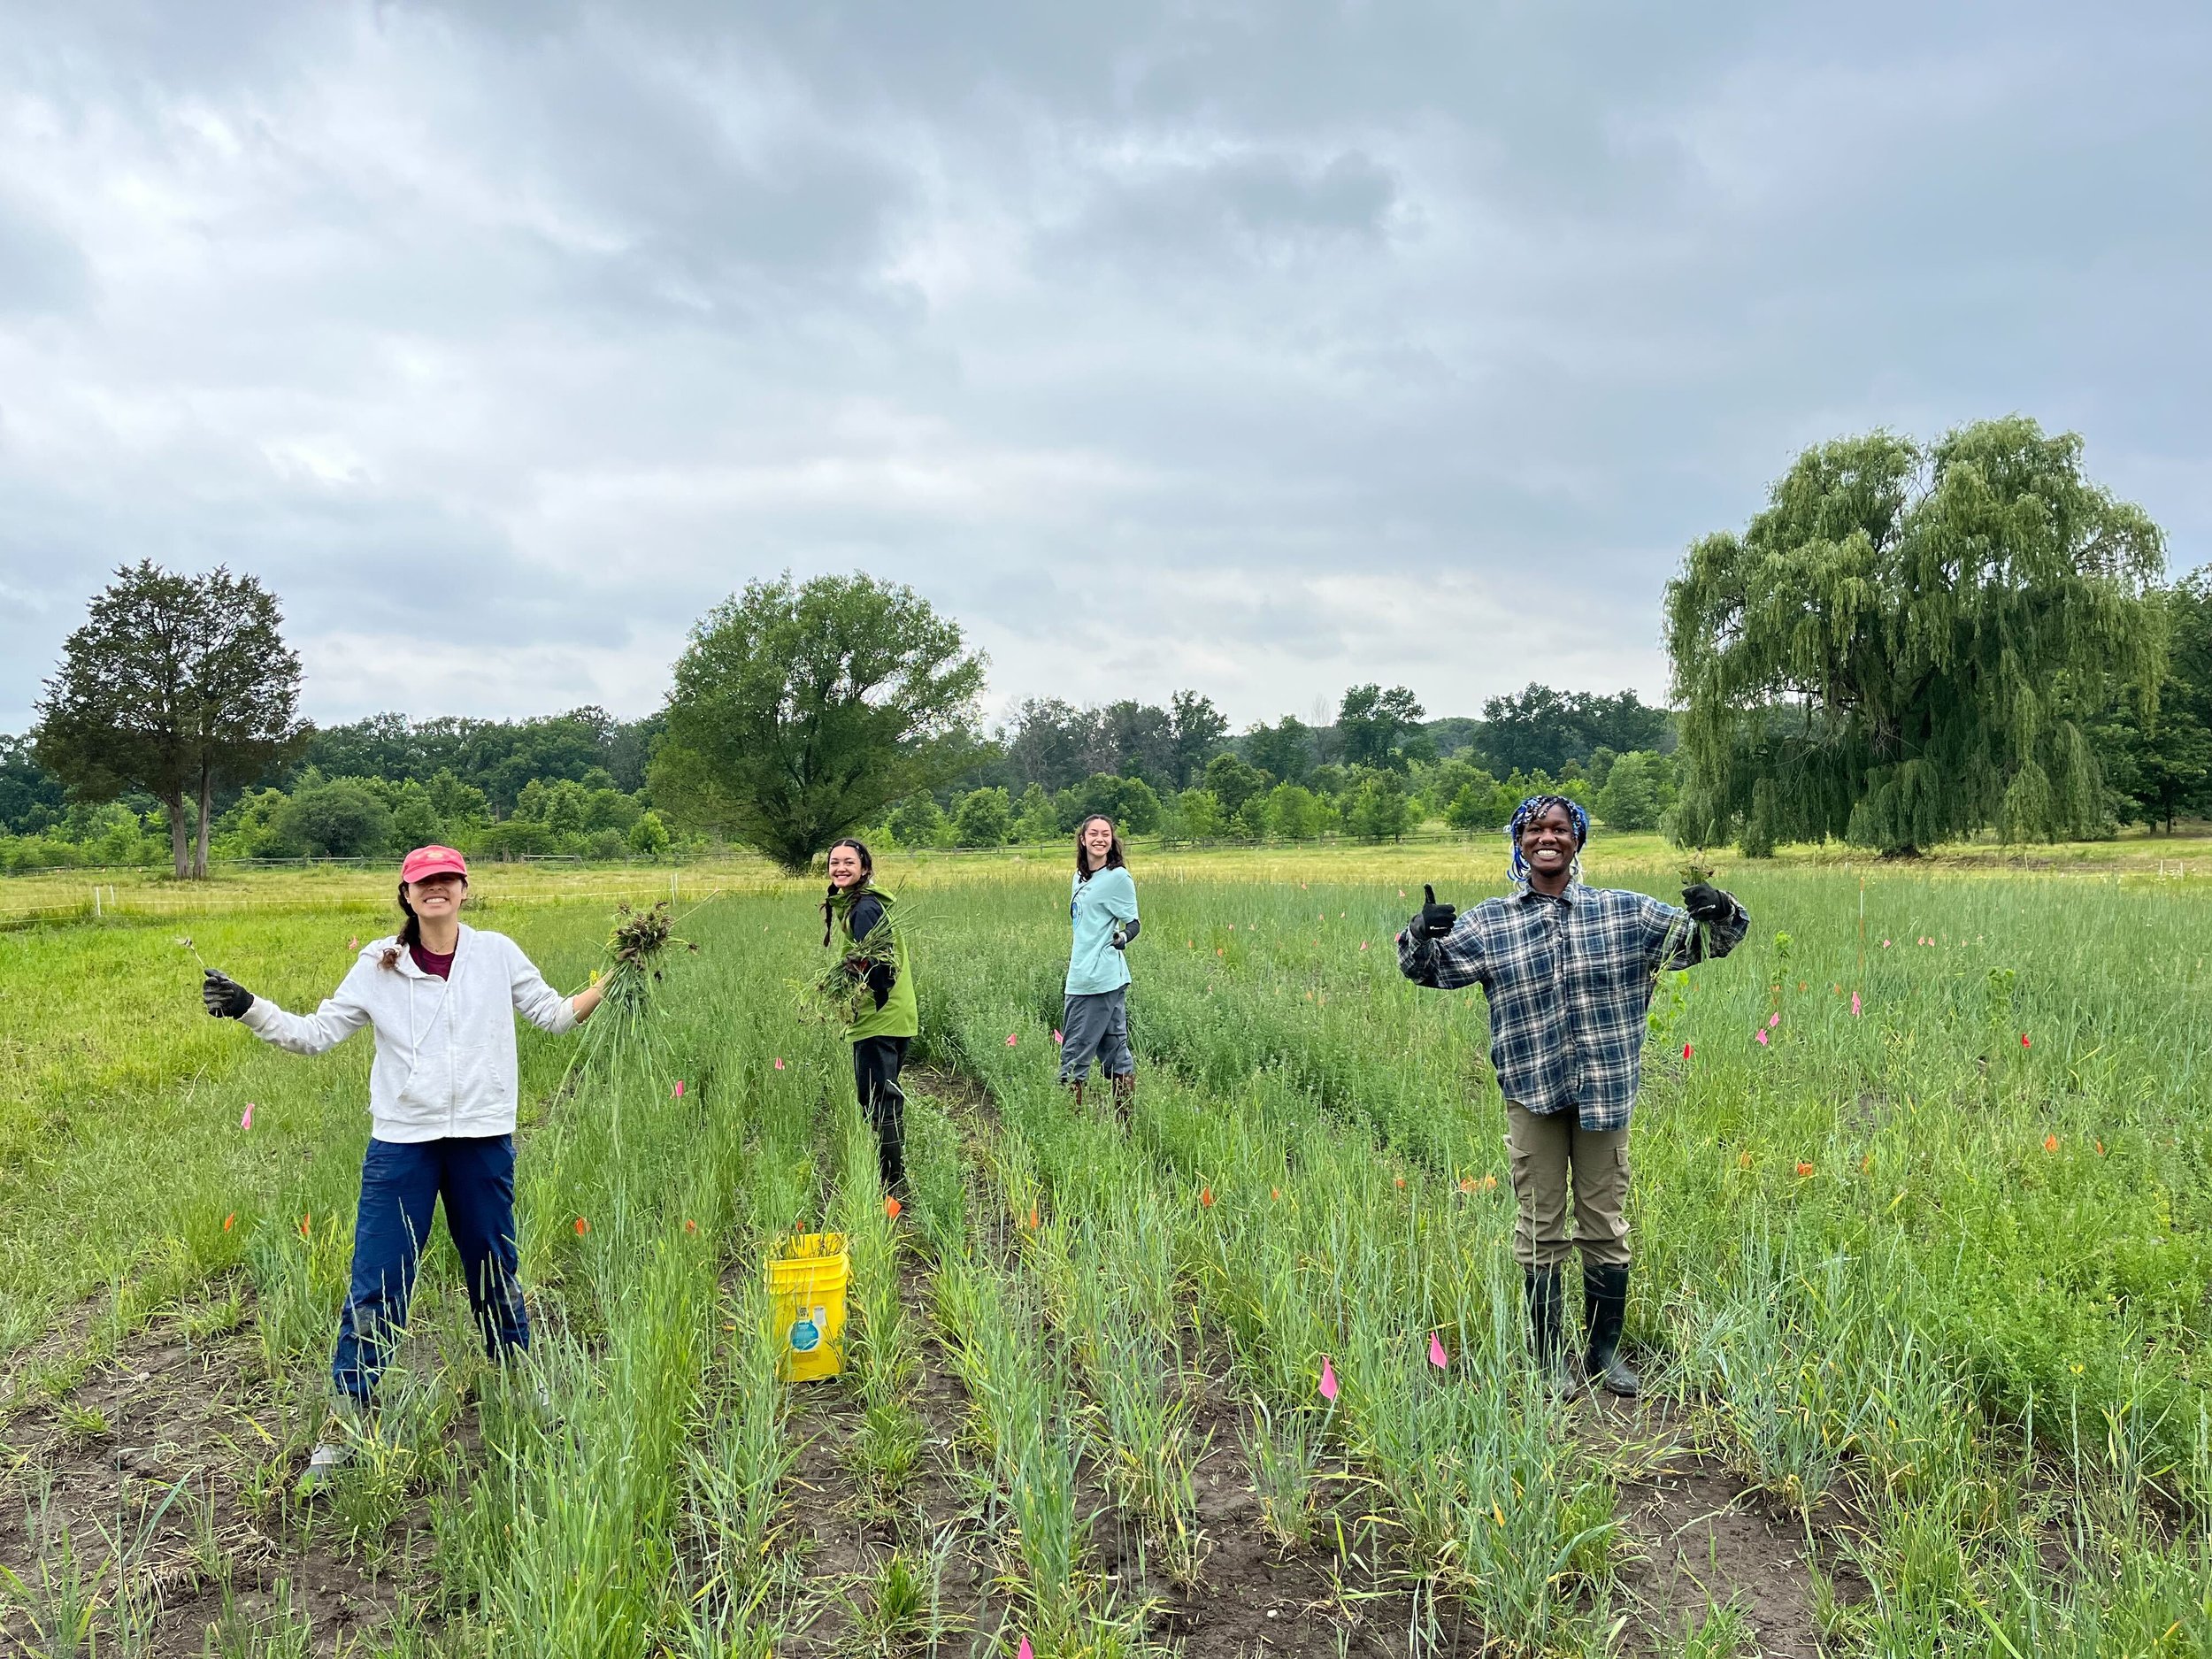  Summer interns weeding a field site 